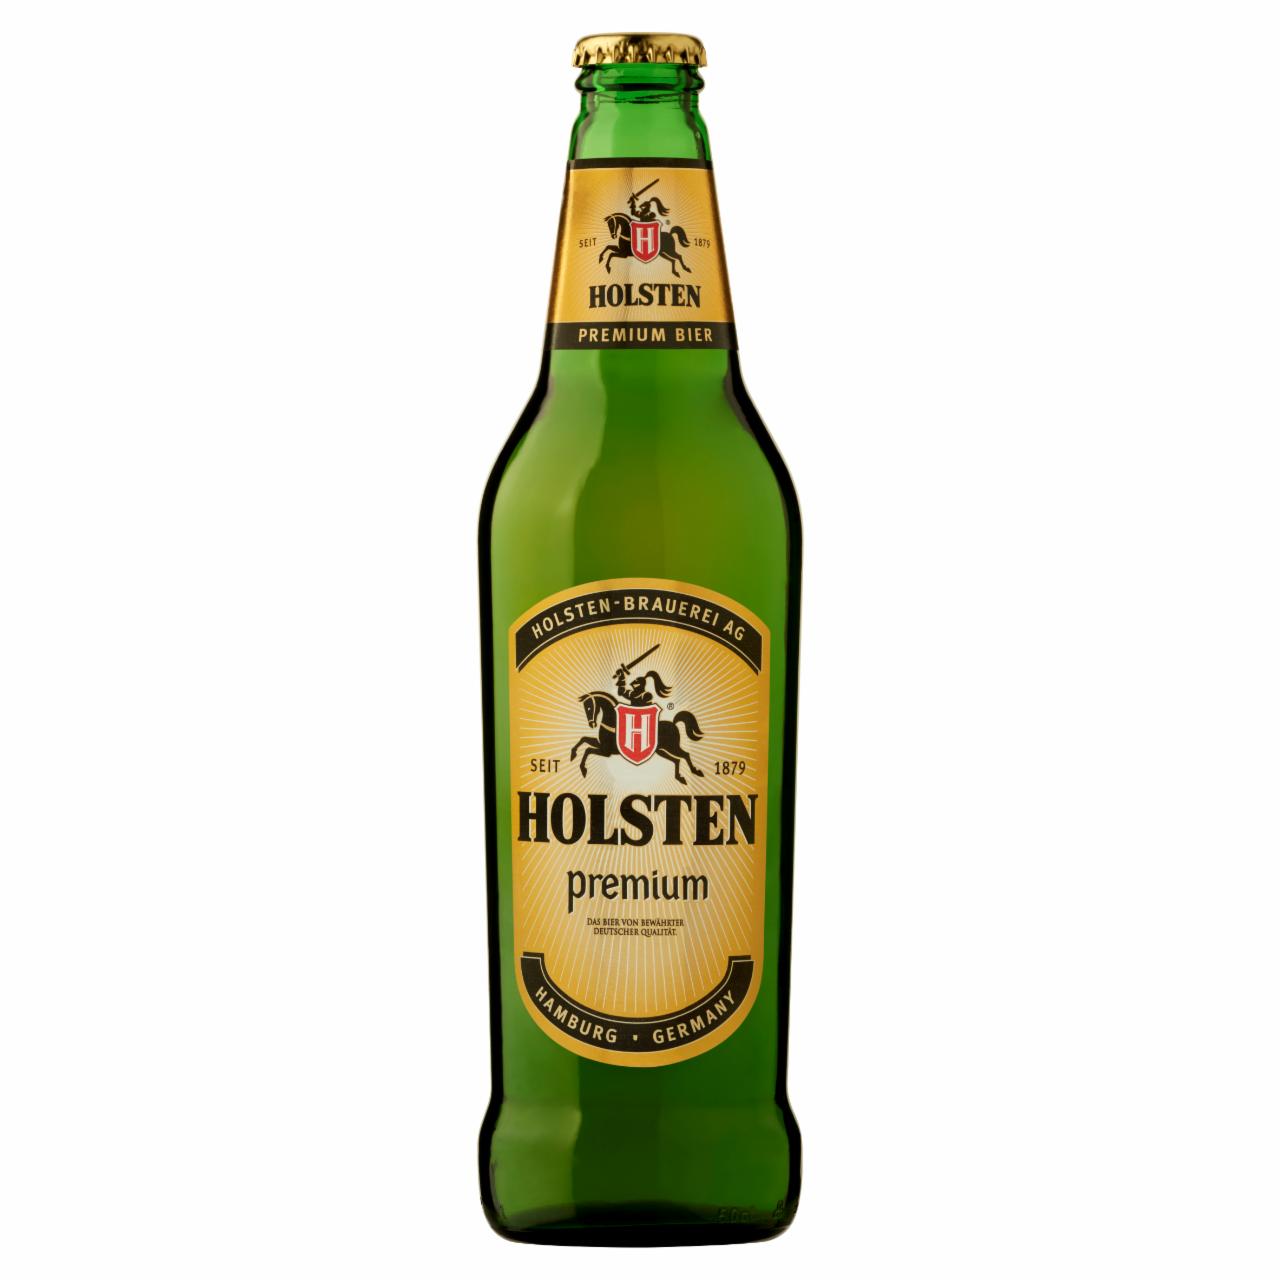 Képek - Holsten Premium világos sör 4% 0,5 l